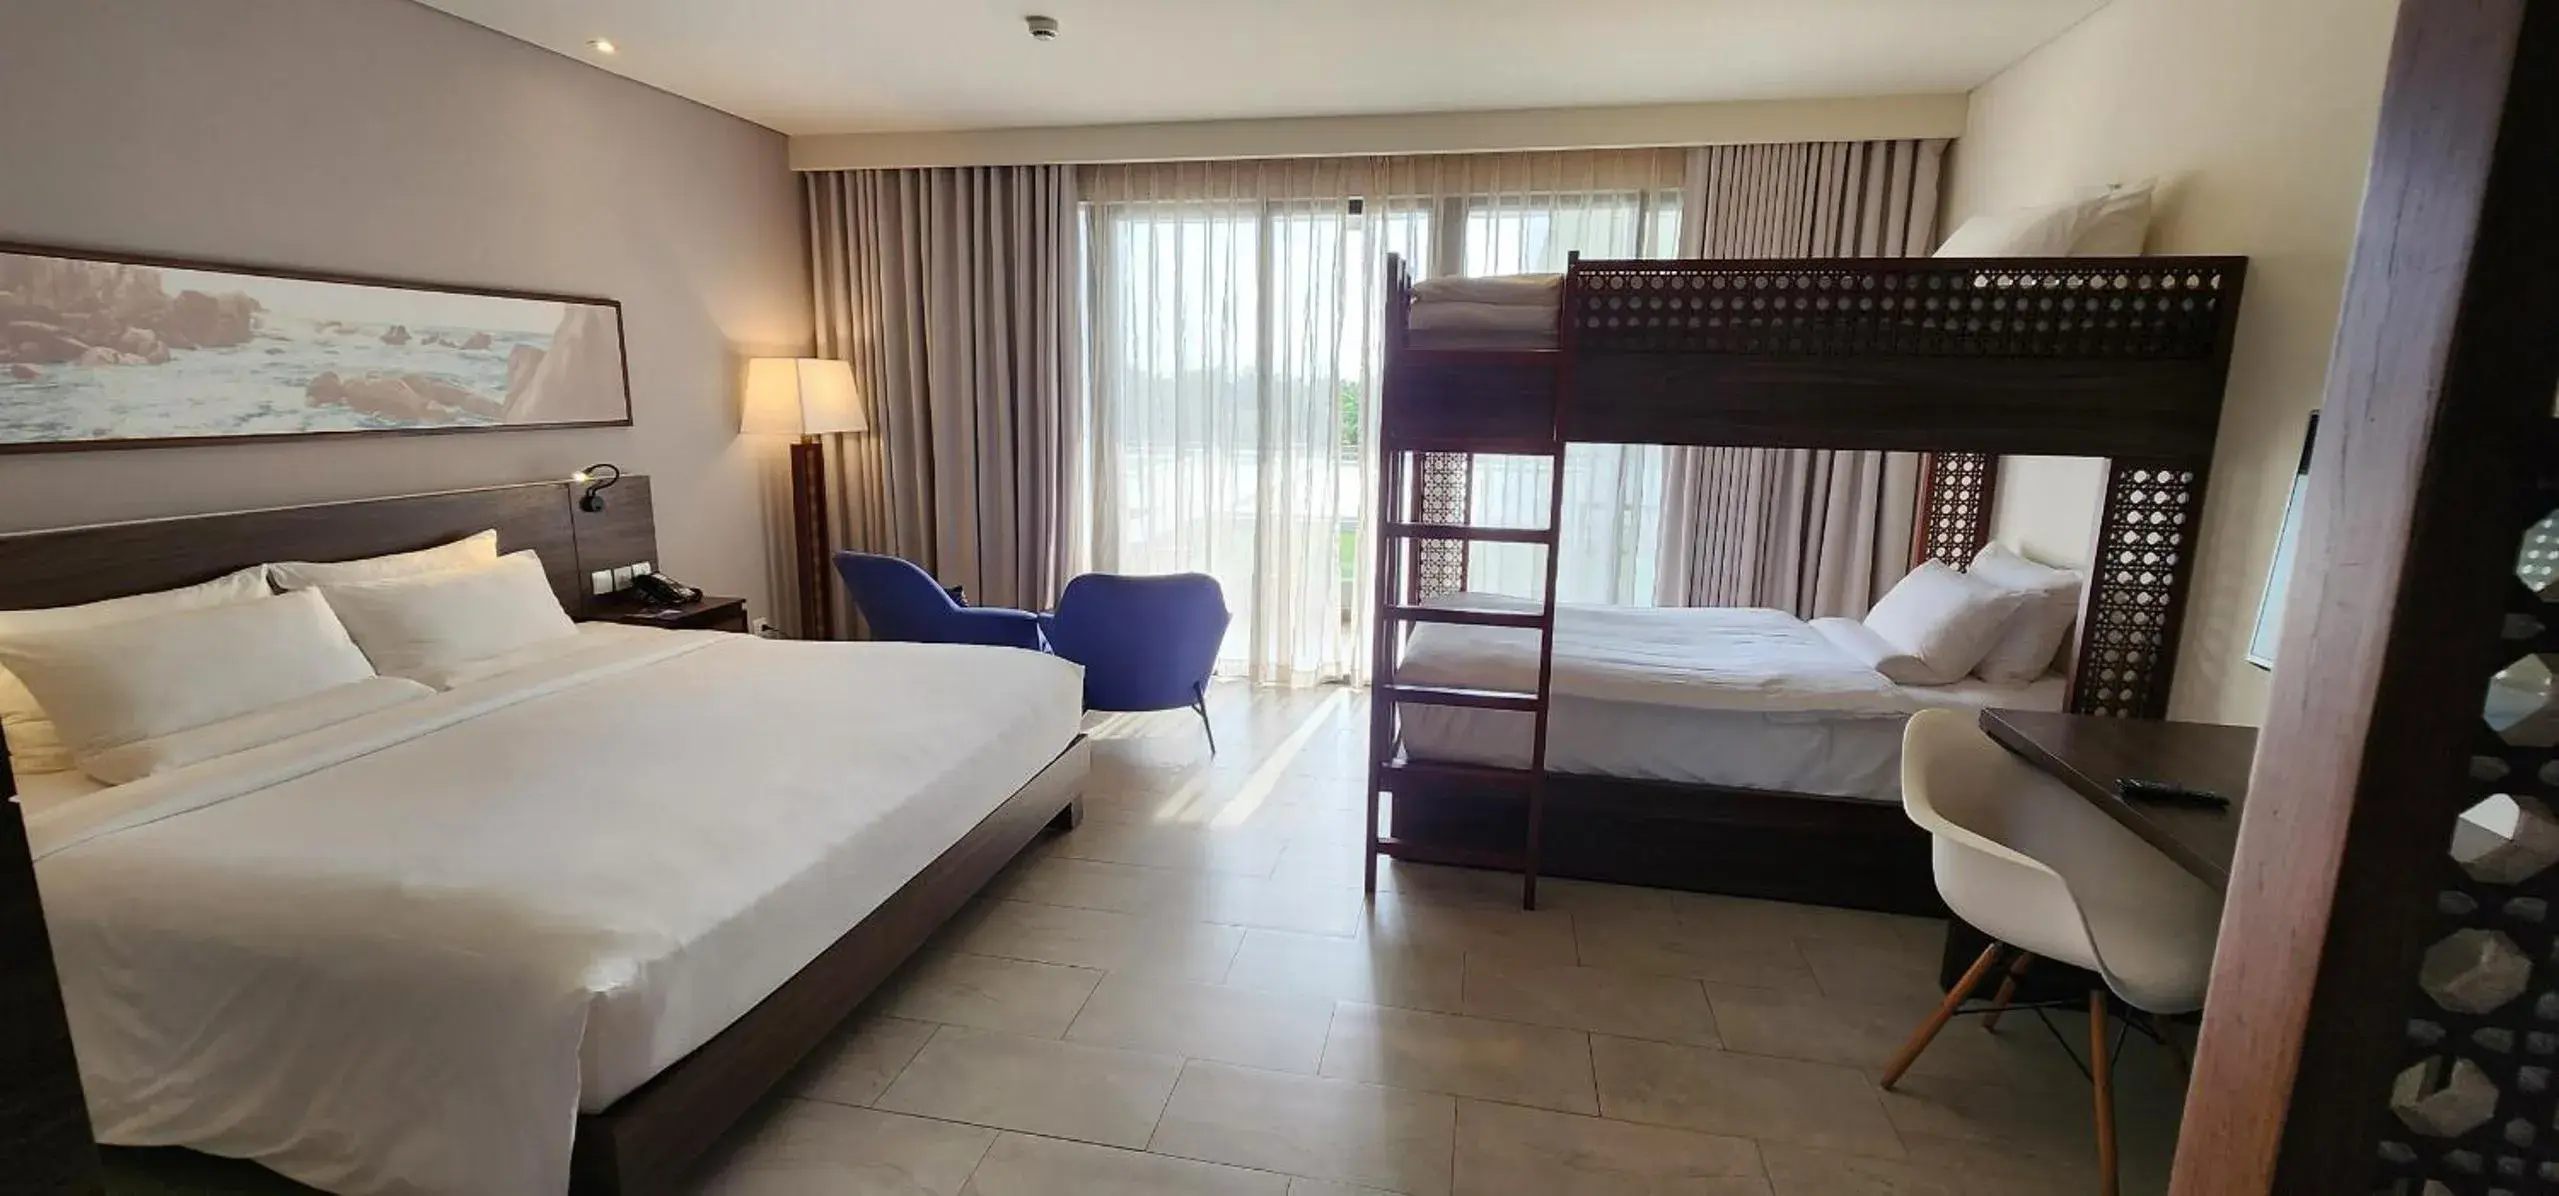 Bedroom in Novotel Phu Quoc Resort